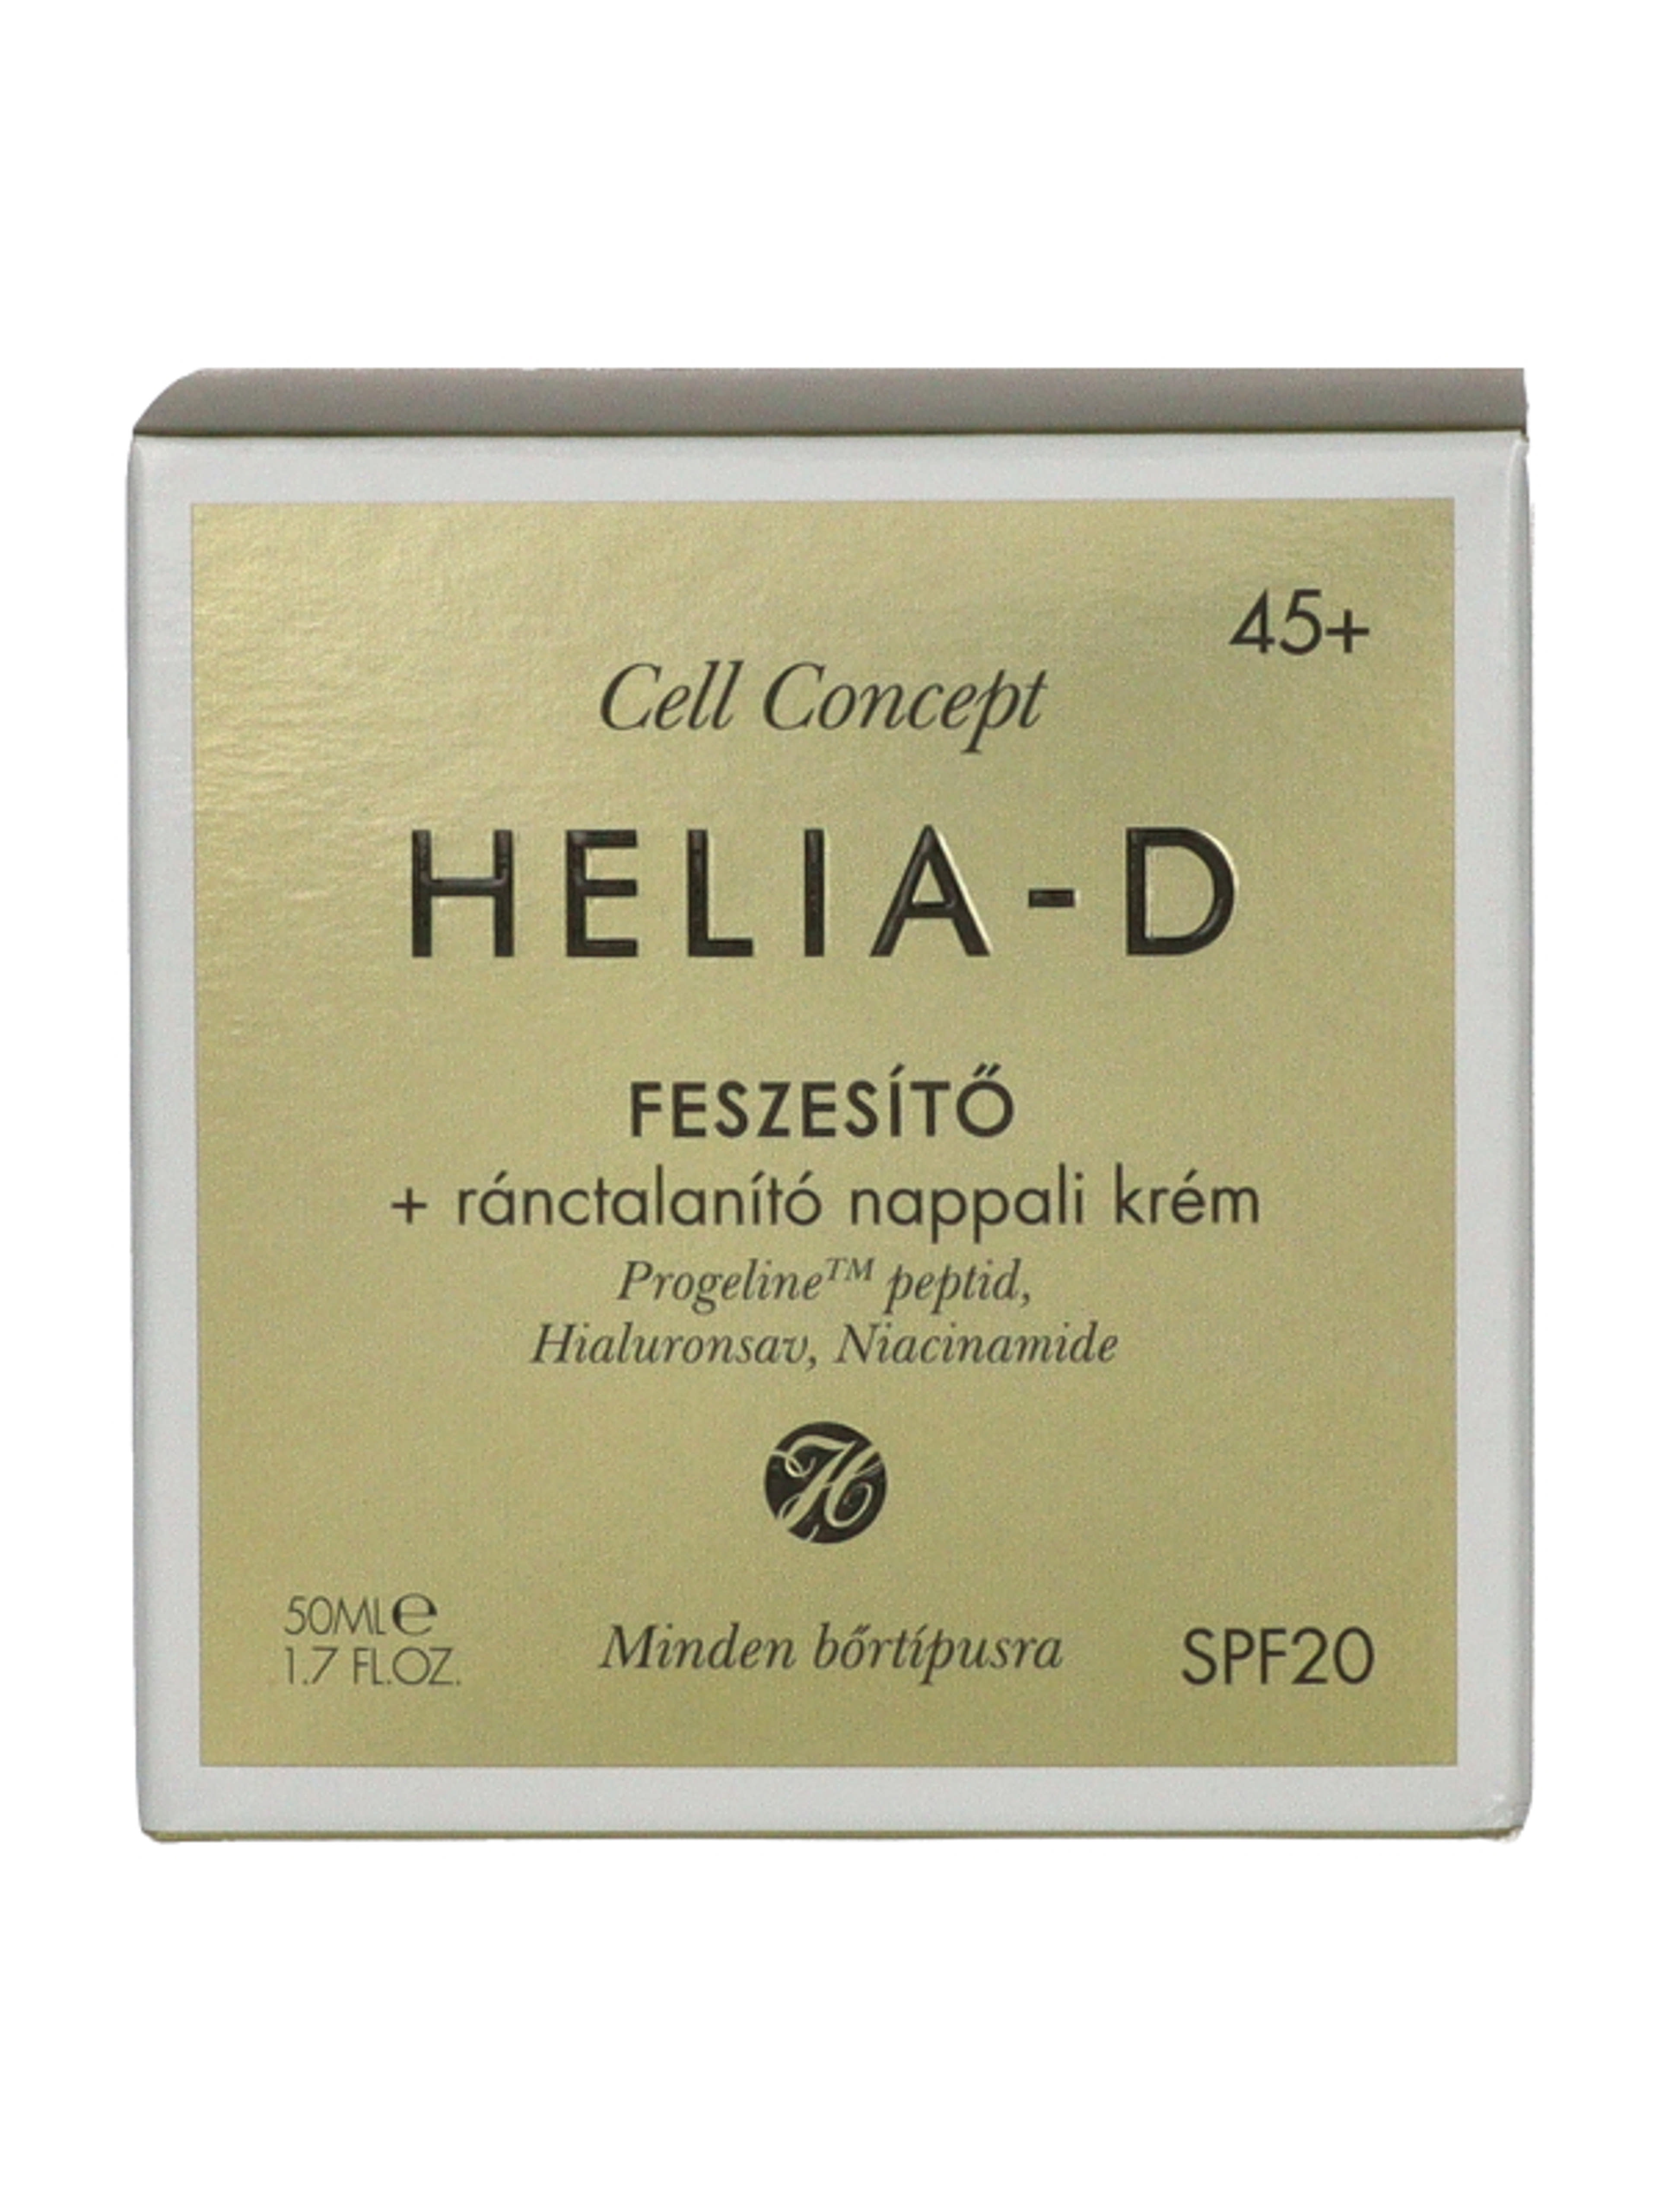 Helia-D Cell Concept feszasítő ránctalanító nappali krém 45+ - 50 ml-3